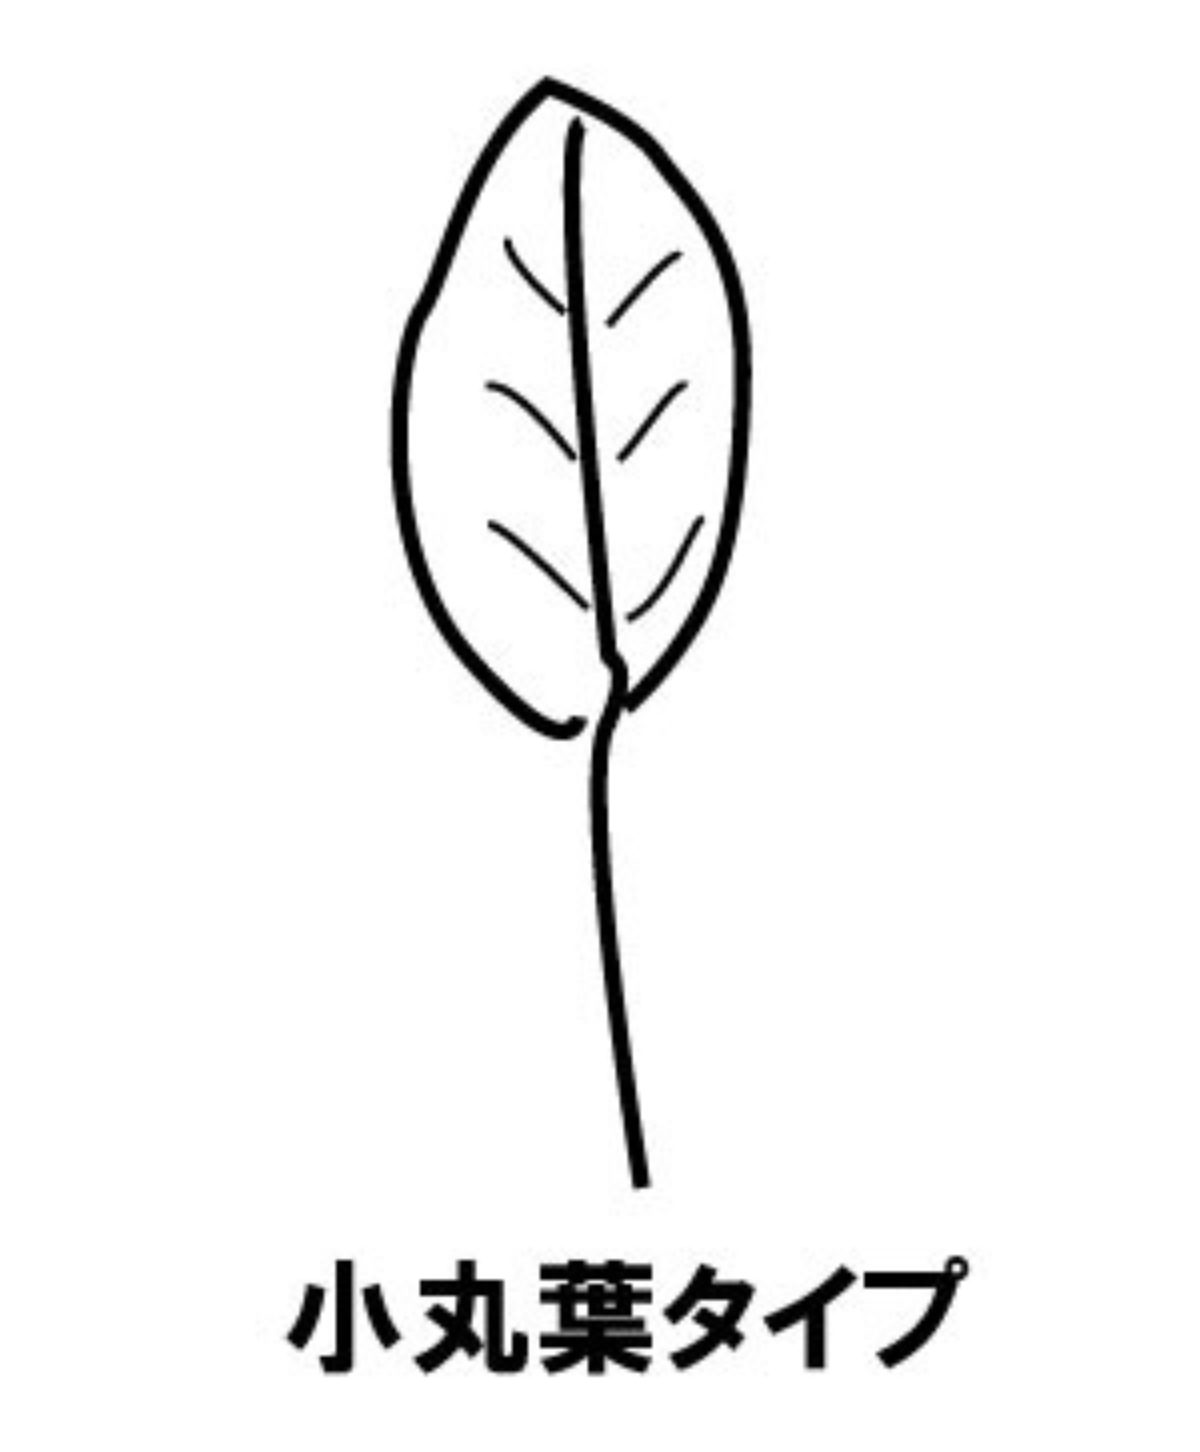 朝顔 アサガオ セイヨウアサガオ リュウキュウアサガオ の葉 茎 根 葉の形 種類 毛 ツルが伸びない ガーデニングサプリ